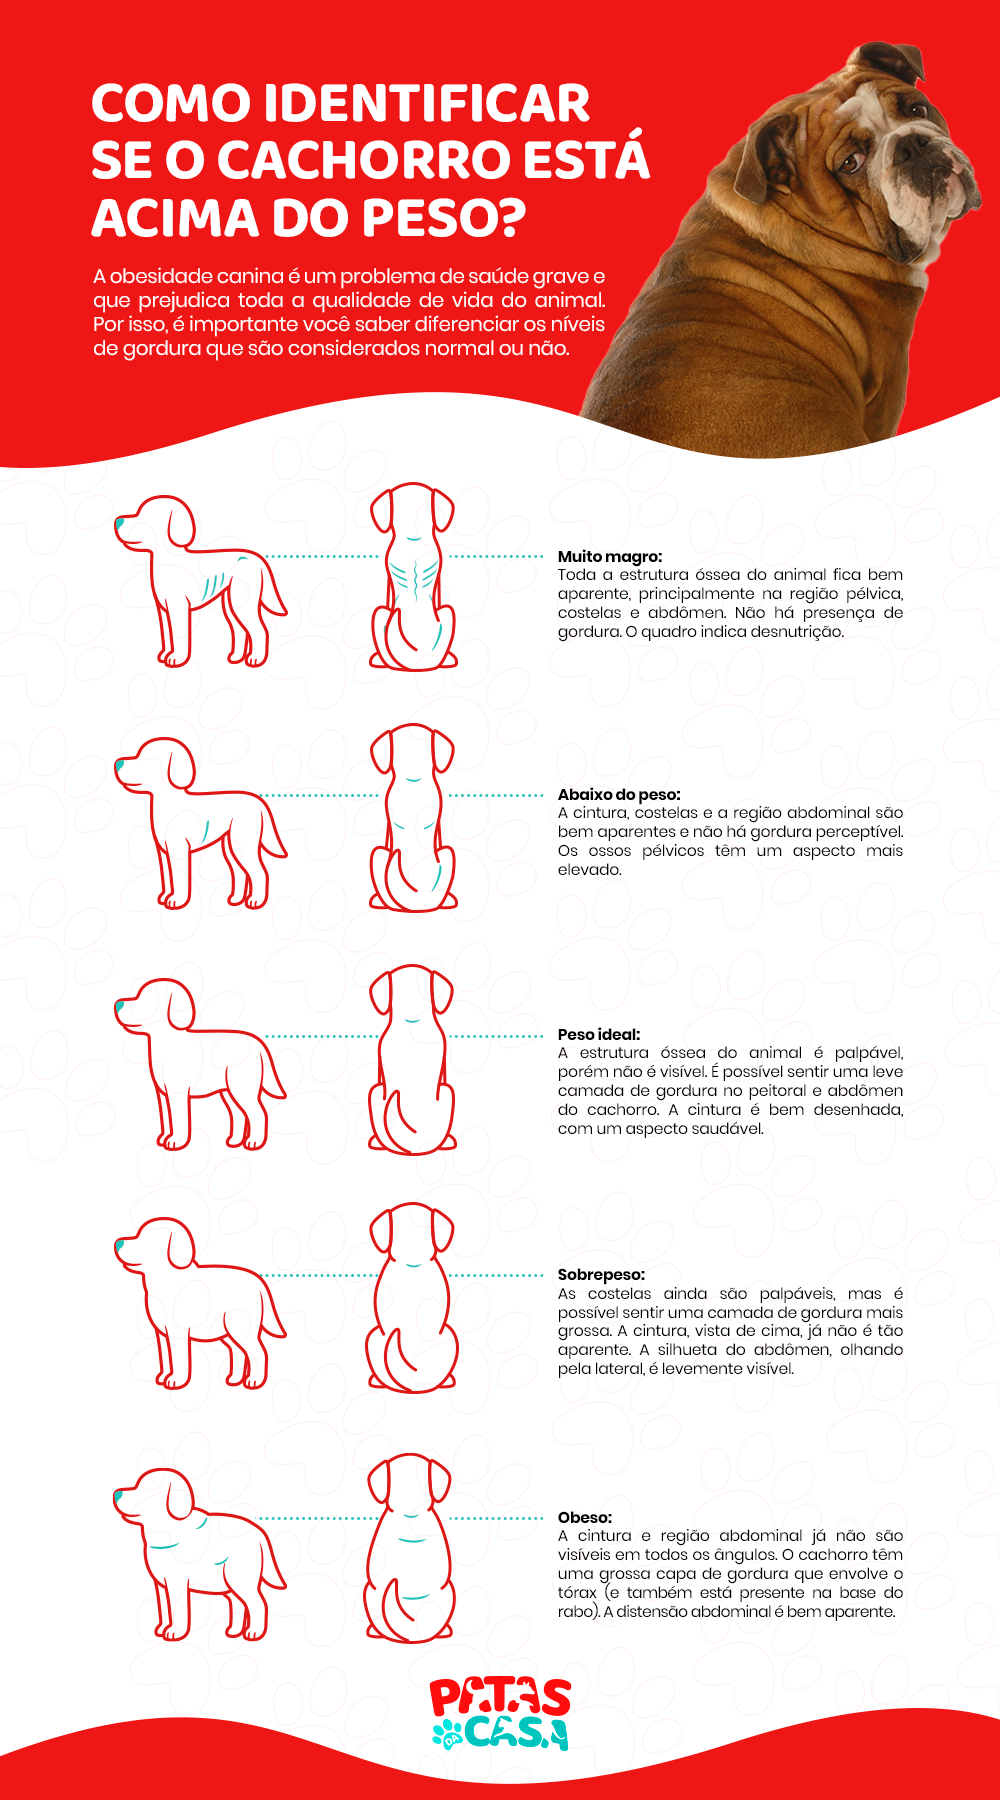  Cayilka Canine: infographic wuxuu ku barayaa sida loo kala saaro eeyga buuran iyo xayawaanka caafimaadka qaba